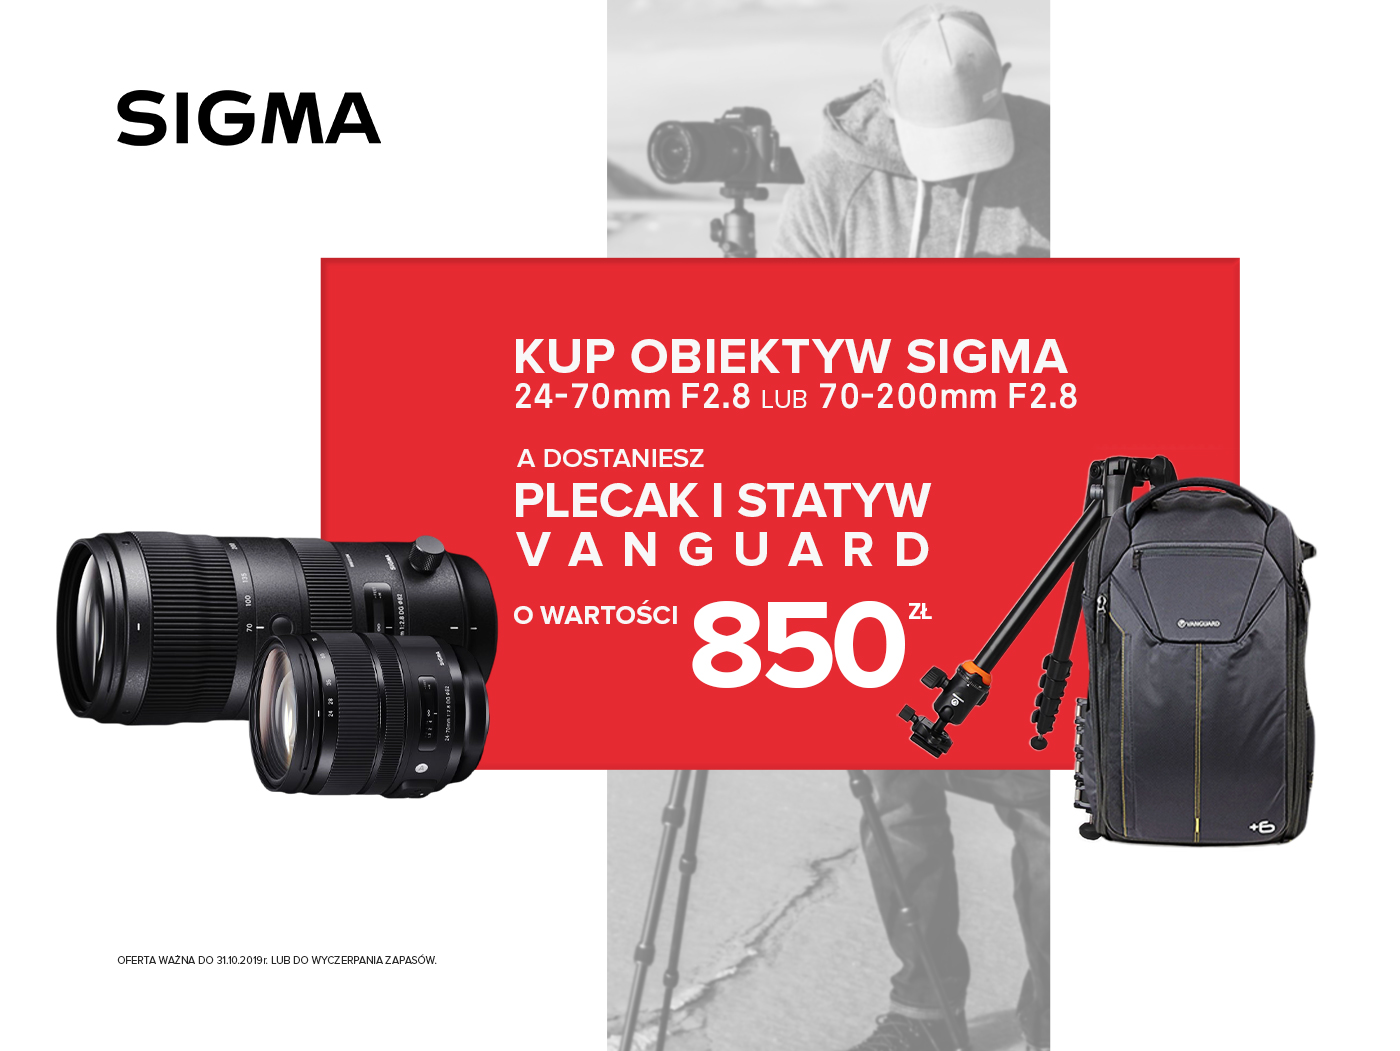 Październikowa promocja SIGMA & Vanguard. Kup obiektyw, zgarnij plecak i statyw!